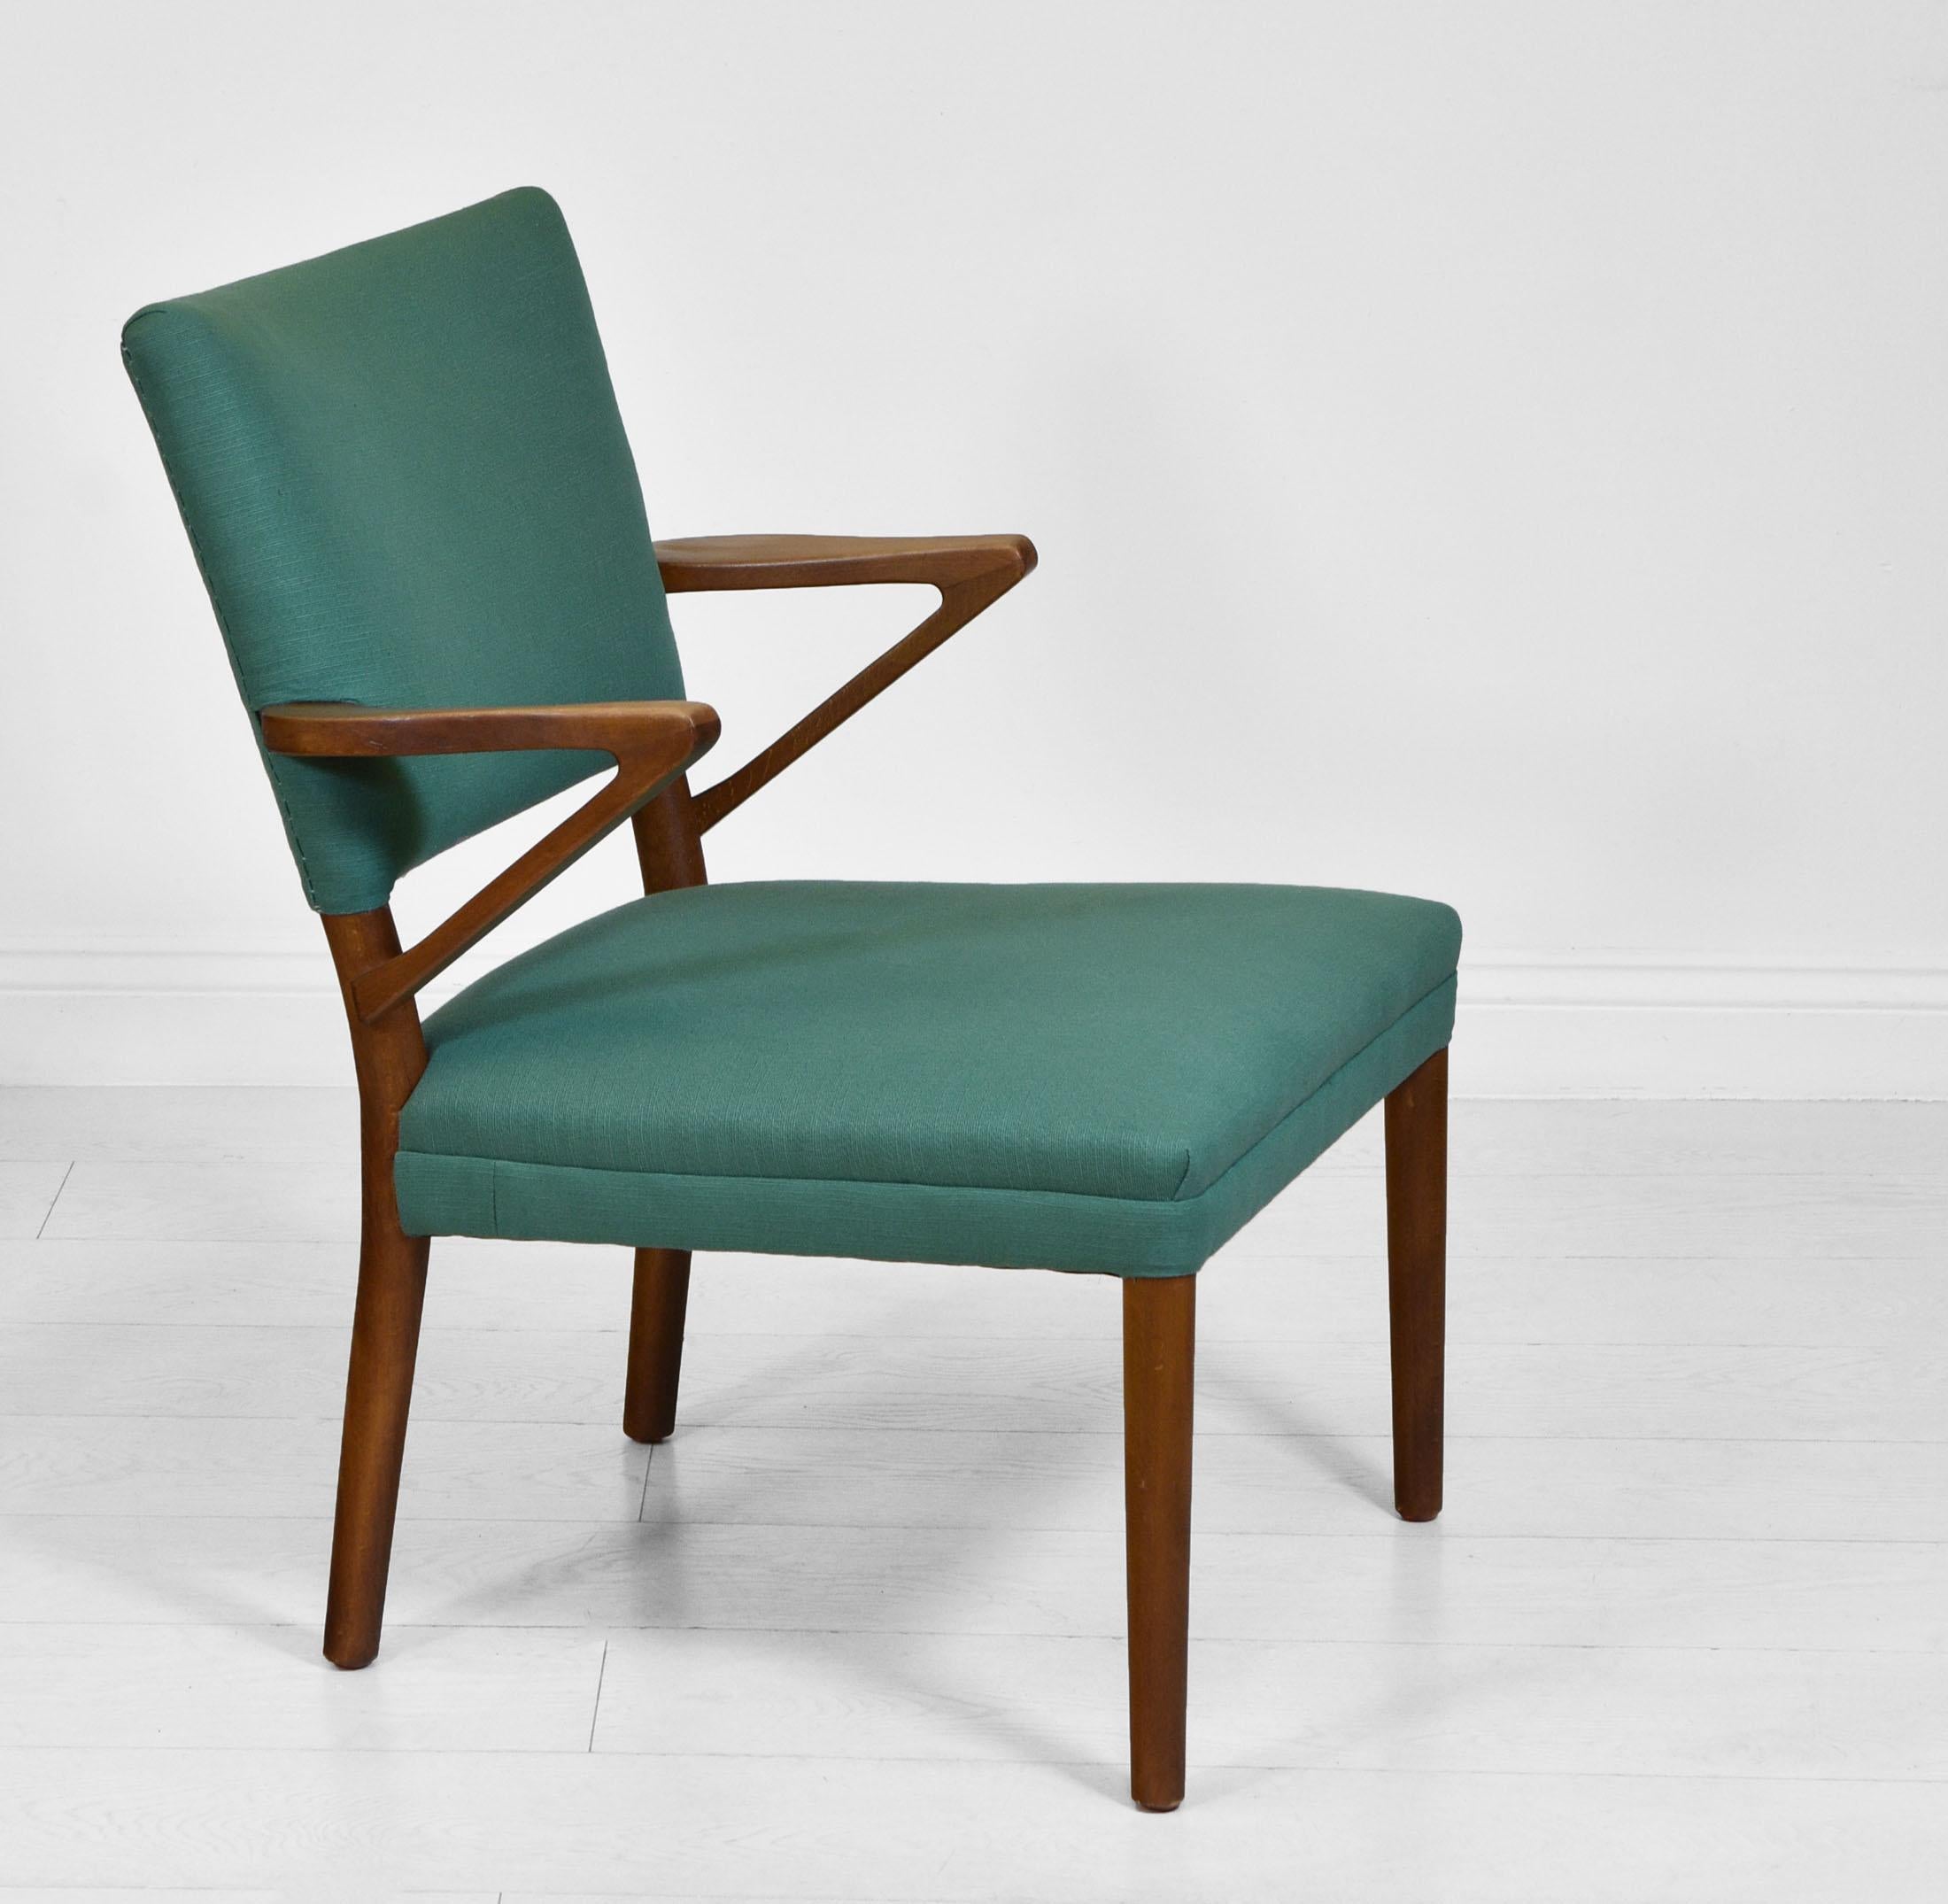 Fauteuil scandinave en bois de hêtre et turquoise, dans le style de Kurt Olsen. Vers les années 1950.

La chaise a été récemment retapissée par des professionnels et recouverte d'un tissu vert turquoise. Il est très confortable.

La structure